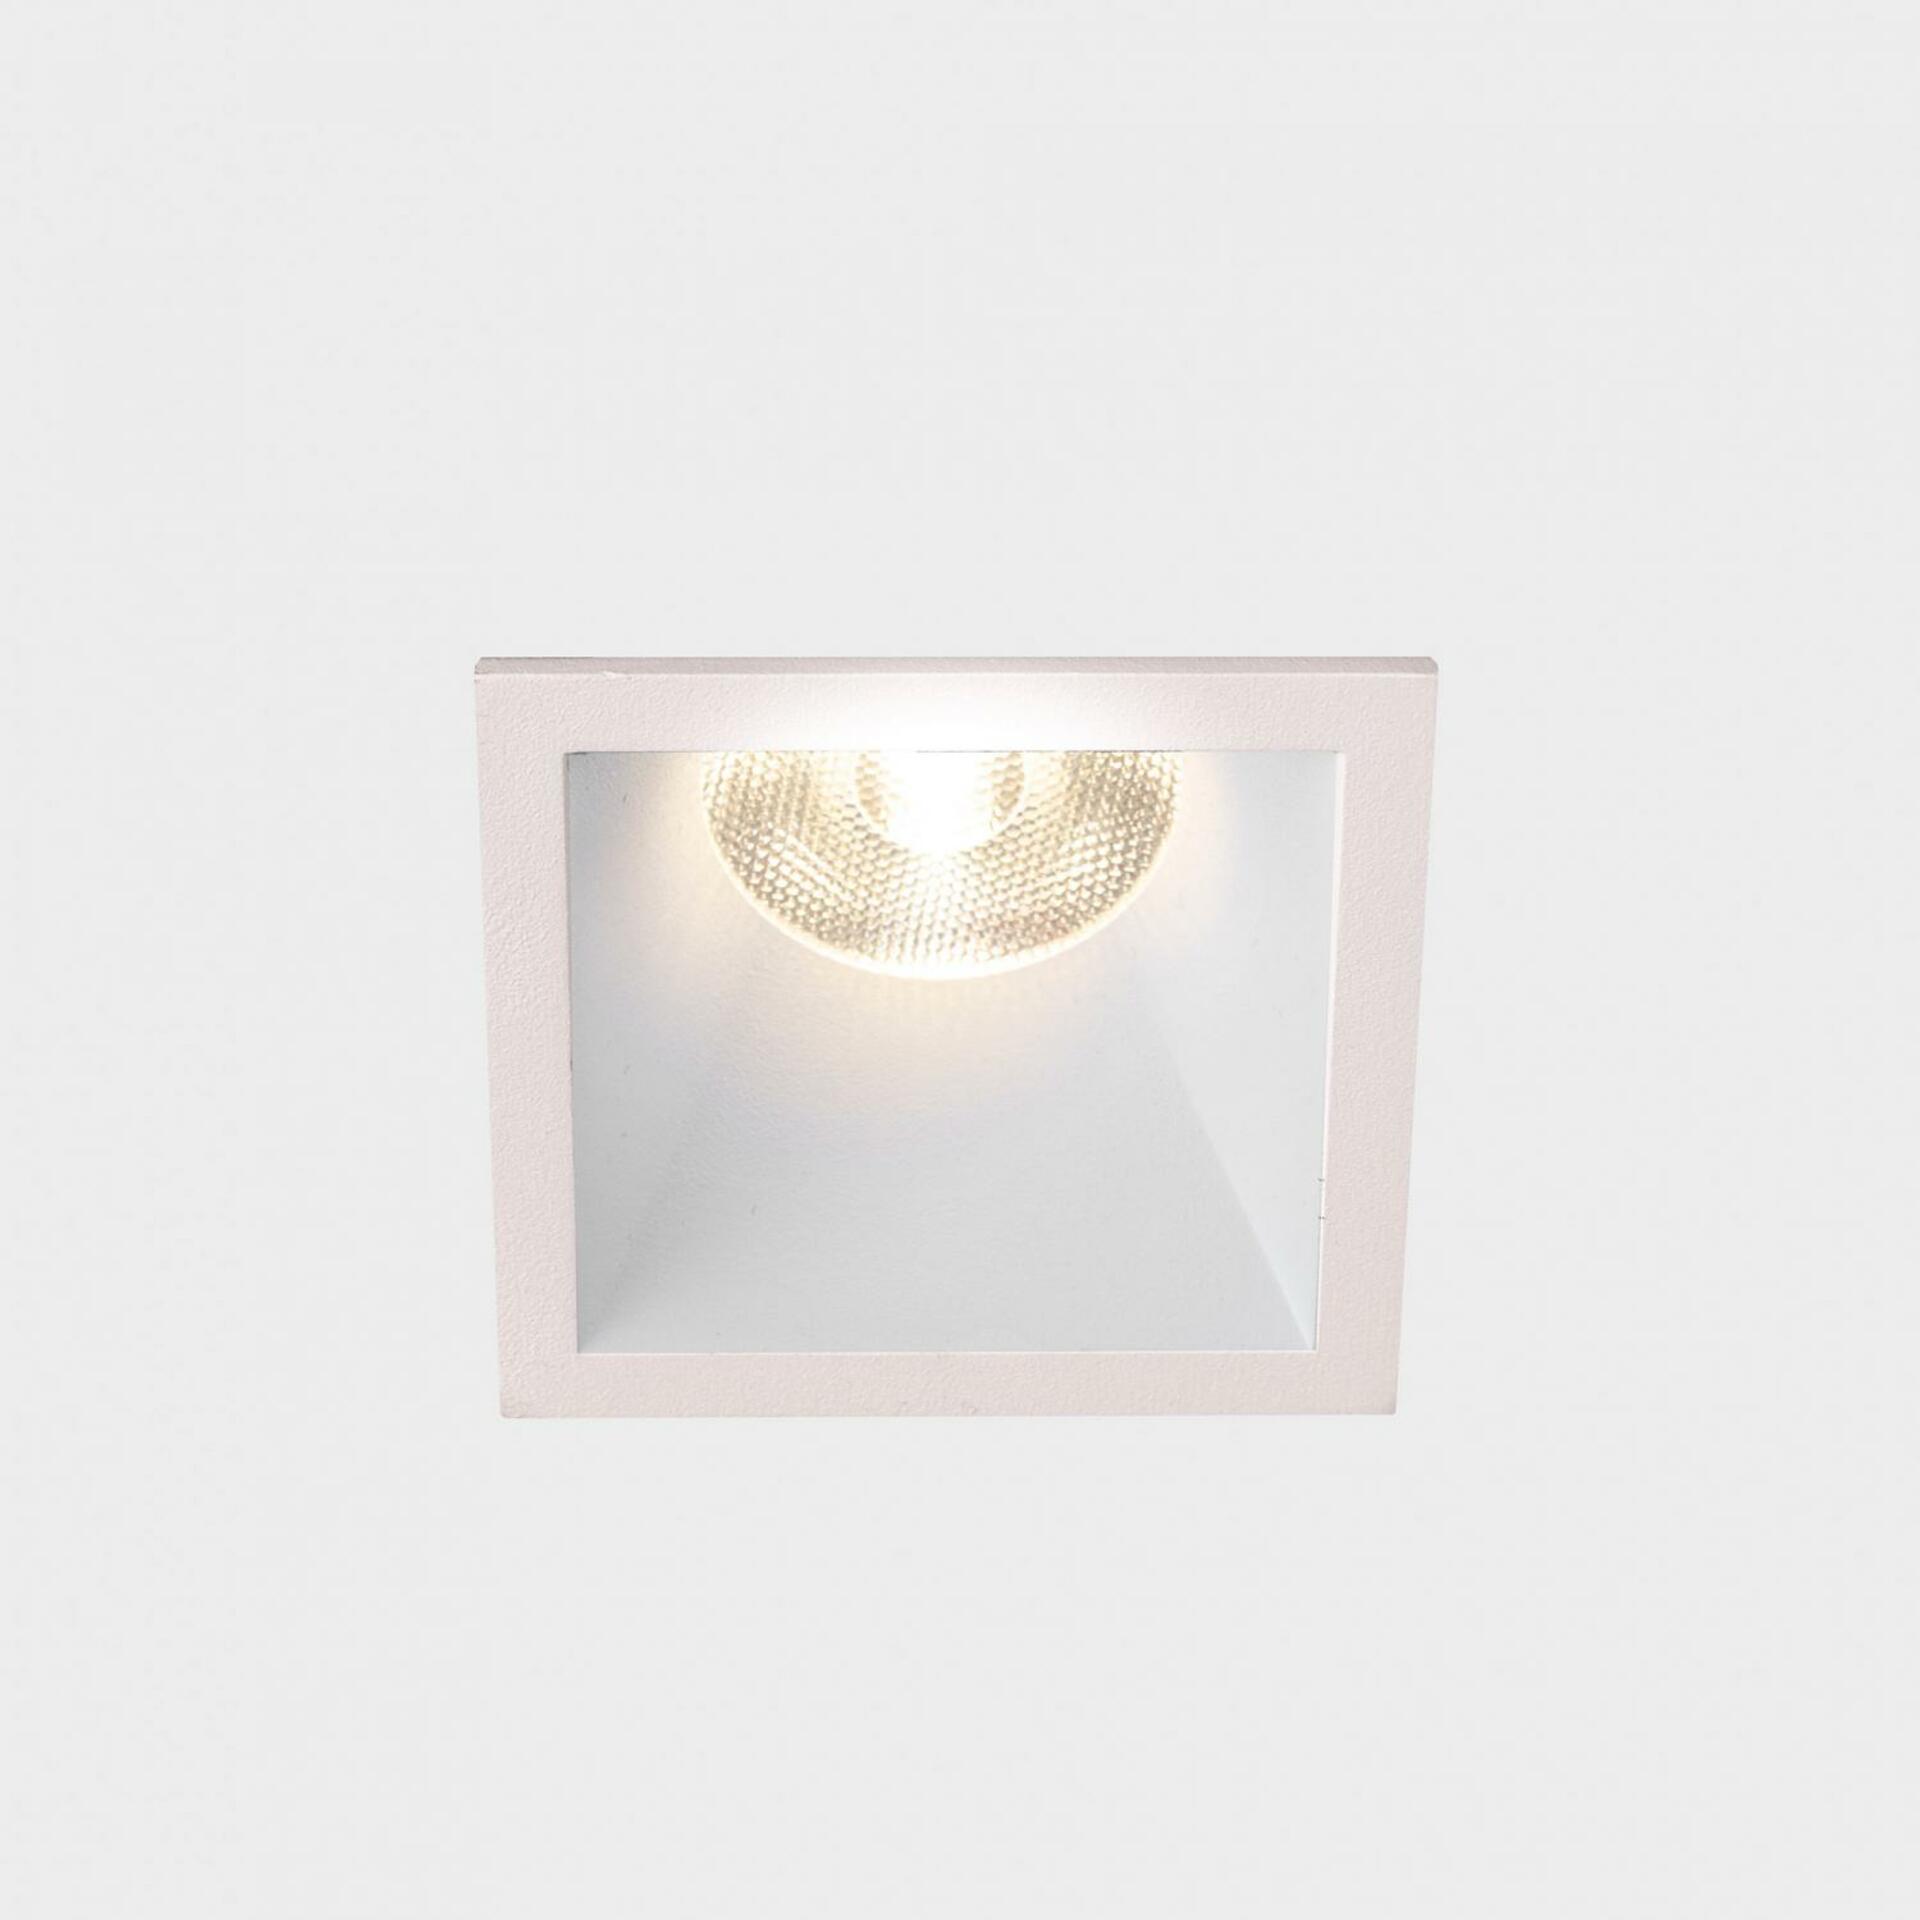 KOHL LIGHTING KOHL-Lighting VERSUS MUZZY SQ zapuštěné svítidlo s rámečkem 56x56mm bílá 25° 9 W CRI 80 2700K DALI